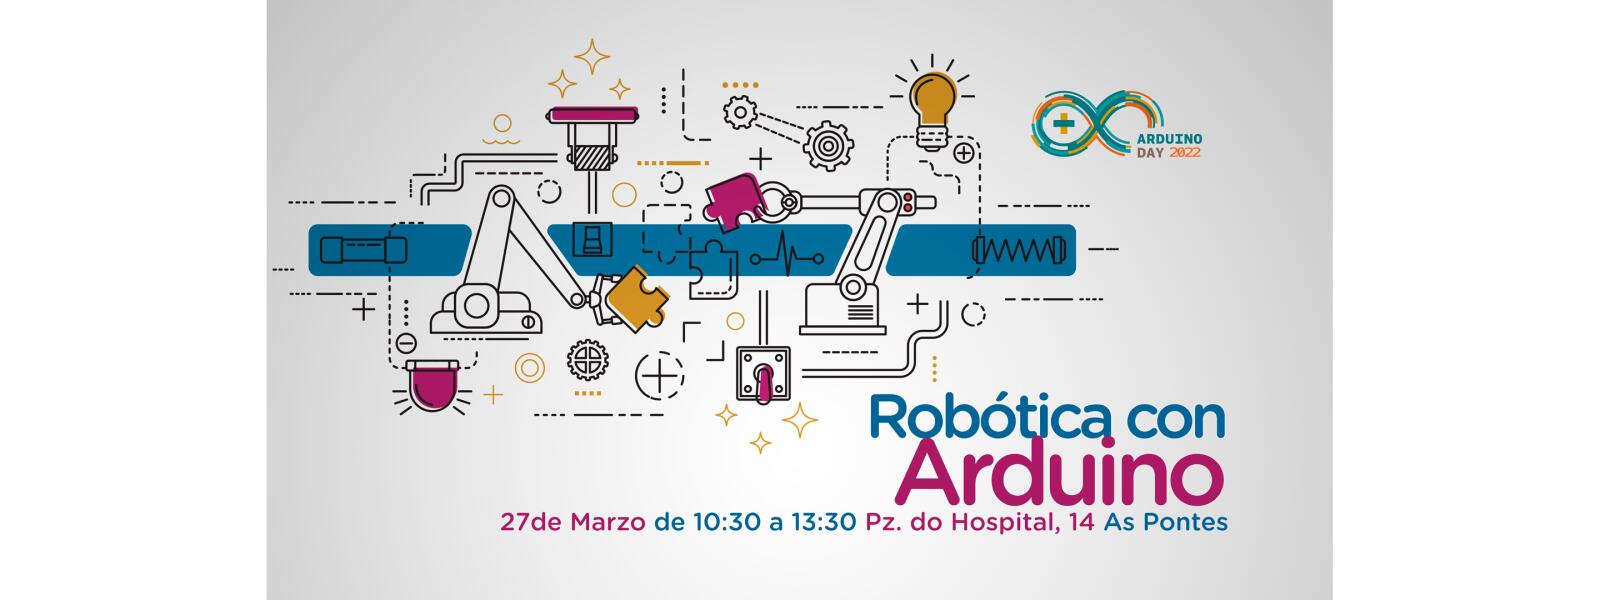 Arduino Day 2022 – Robótica con Arduino